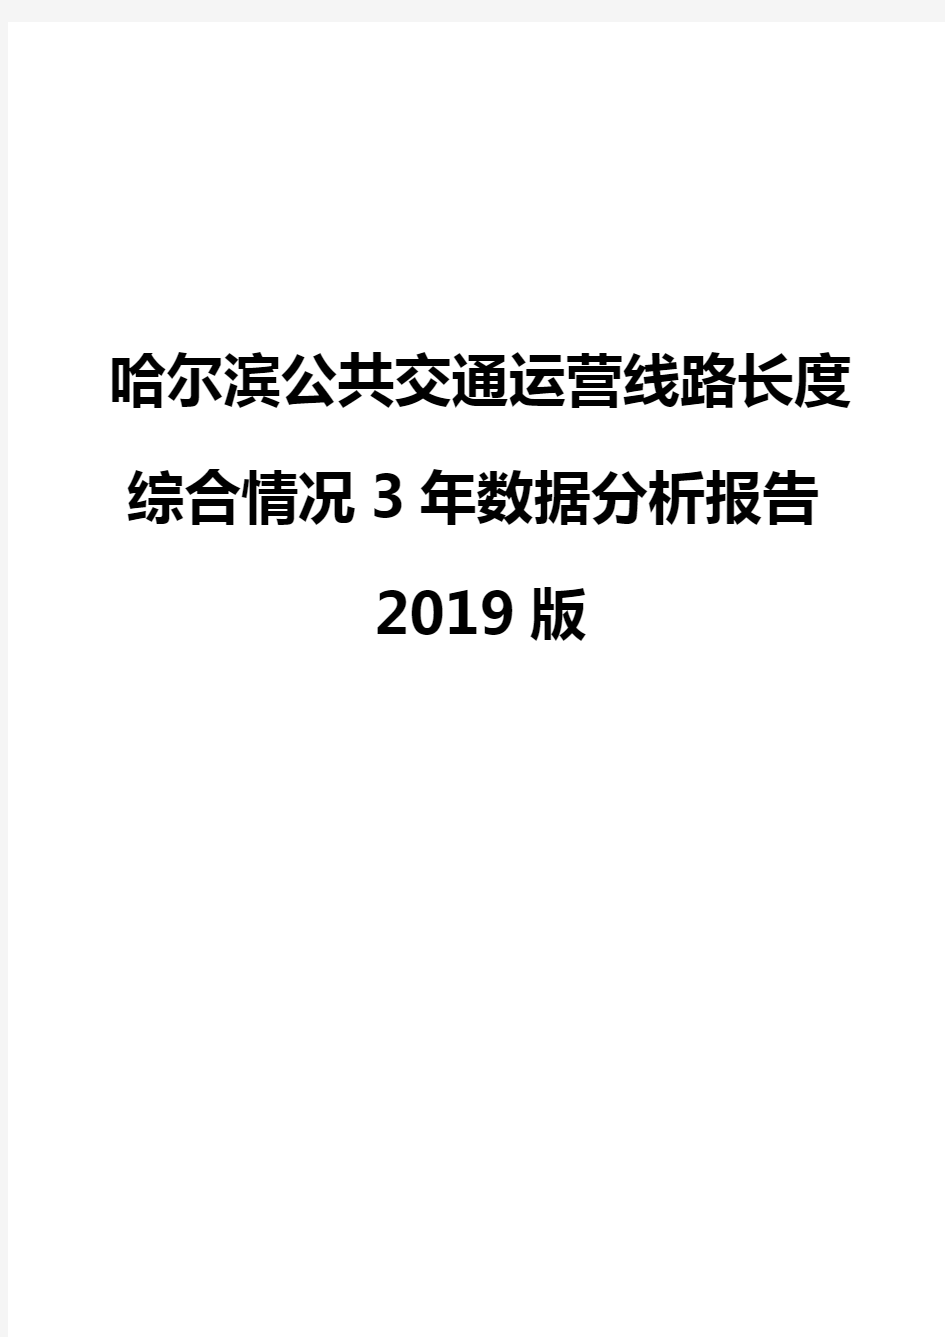 哈尔滨公共交通运营线路长度综合情况3年数据分析报告2019版